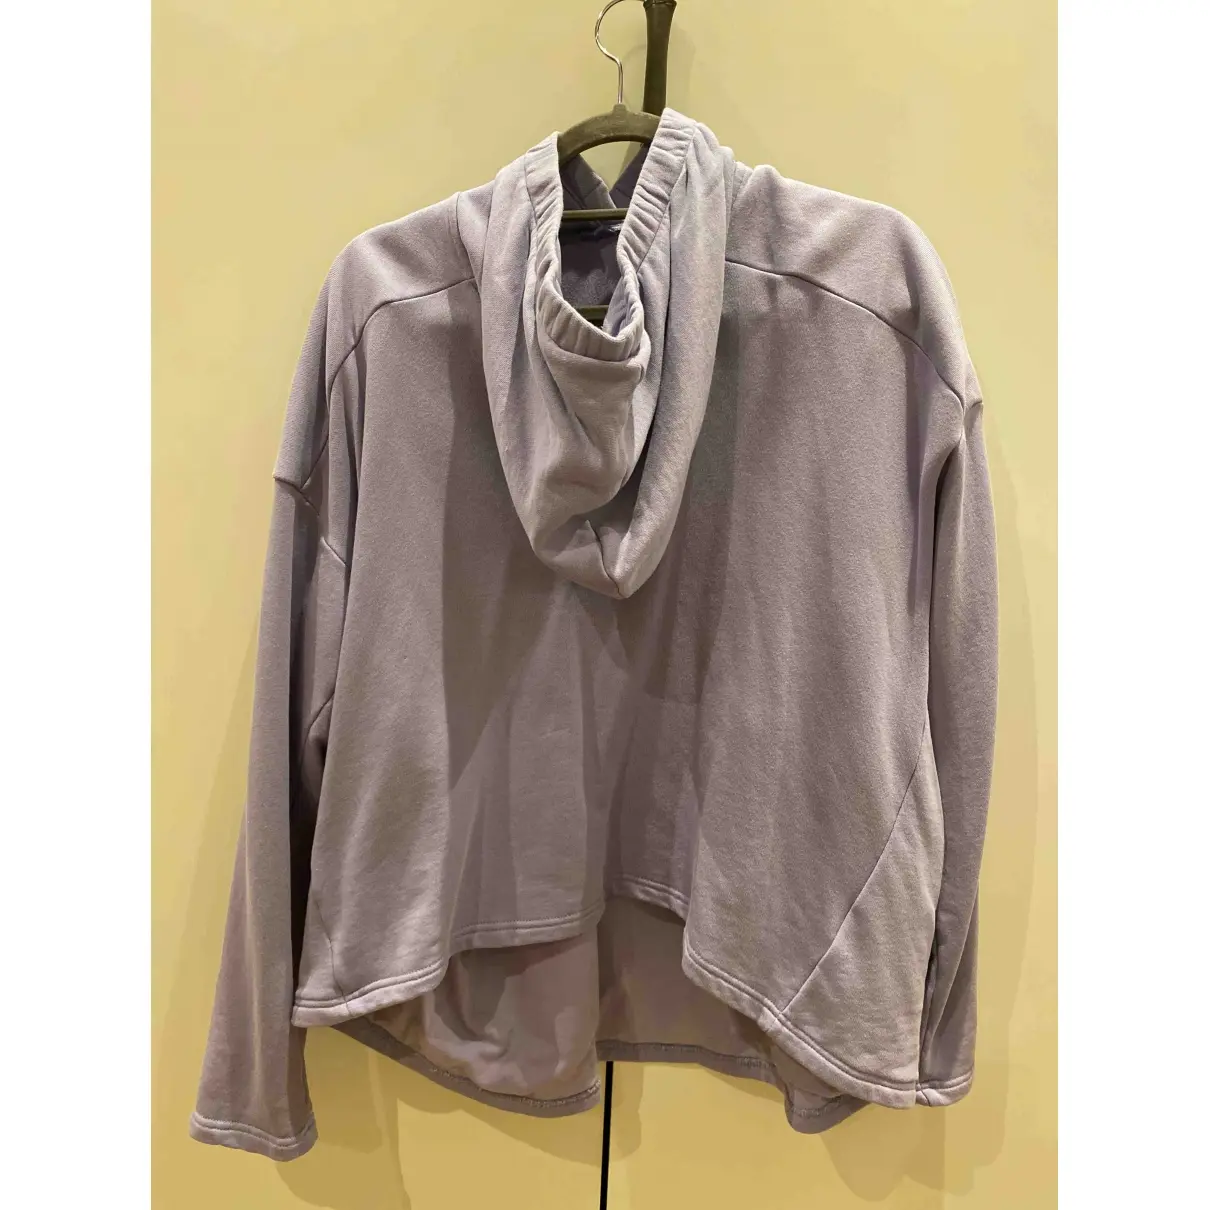 Buy Martine Rose Purple Cotton Knitwear & Sweatshirt online